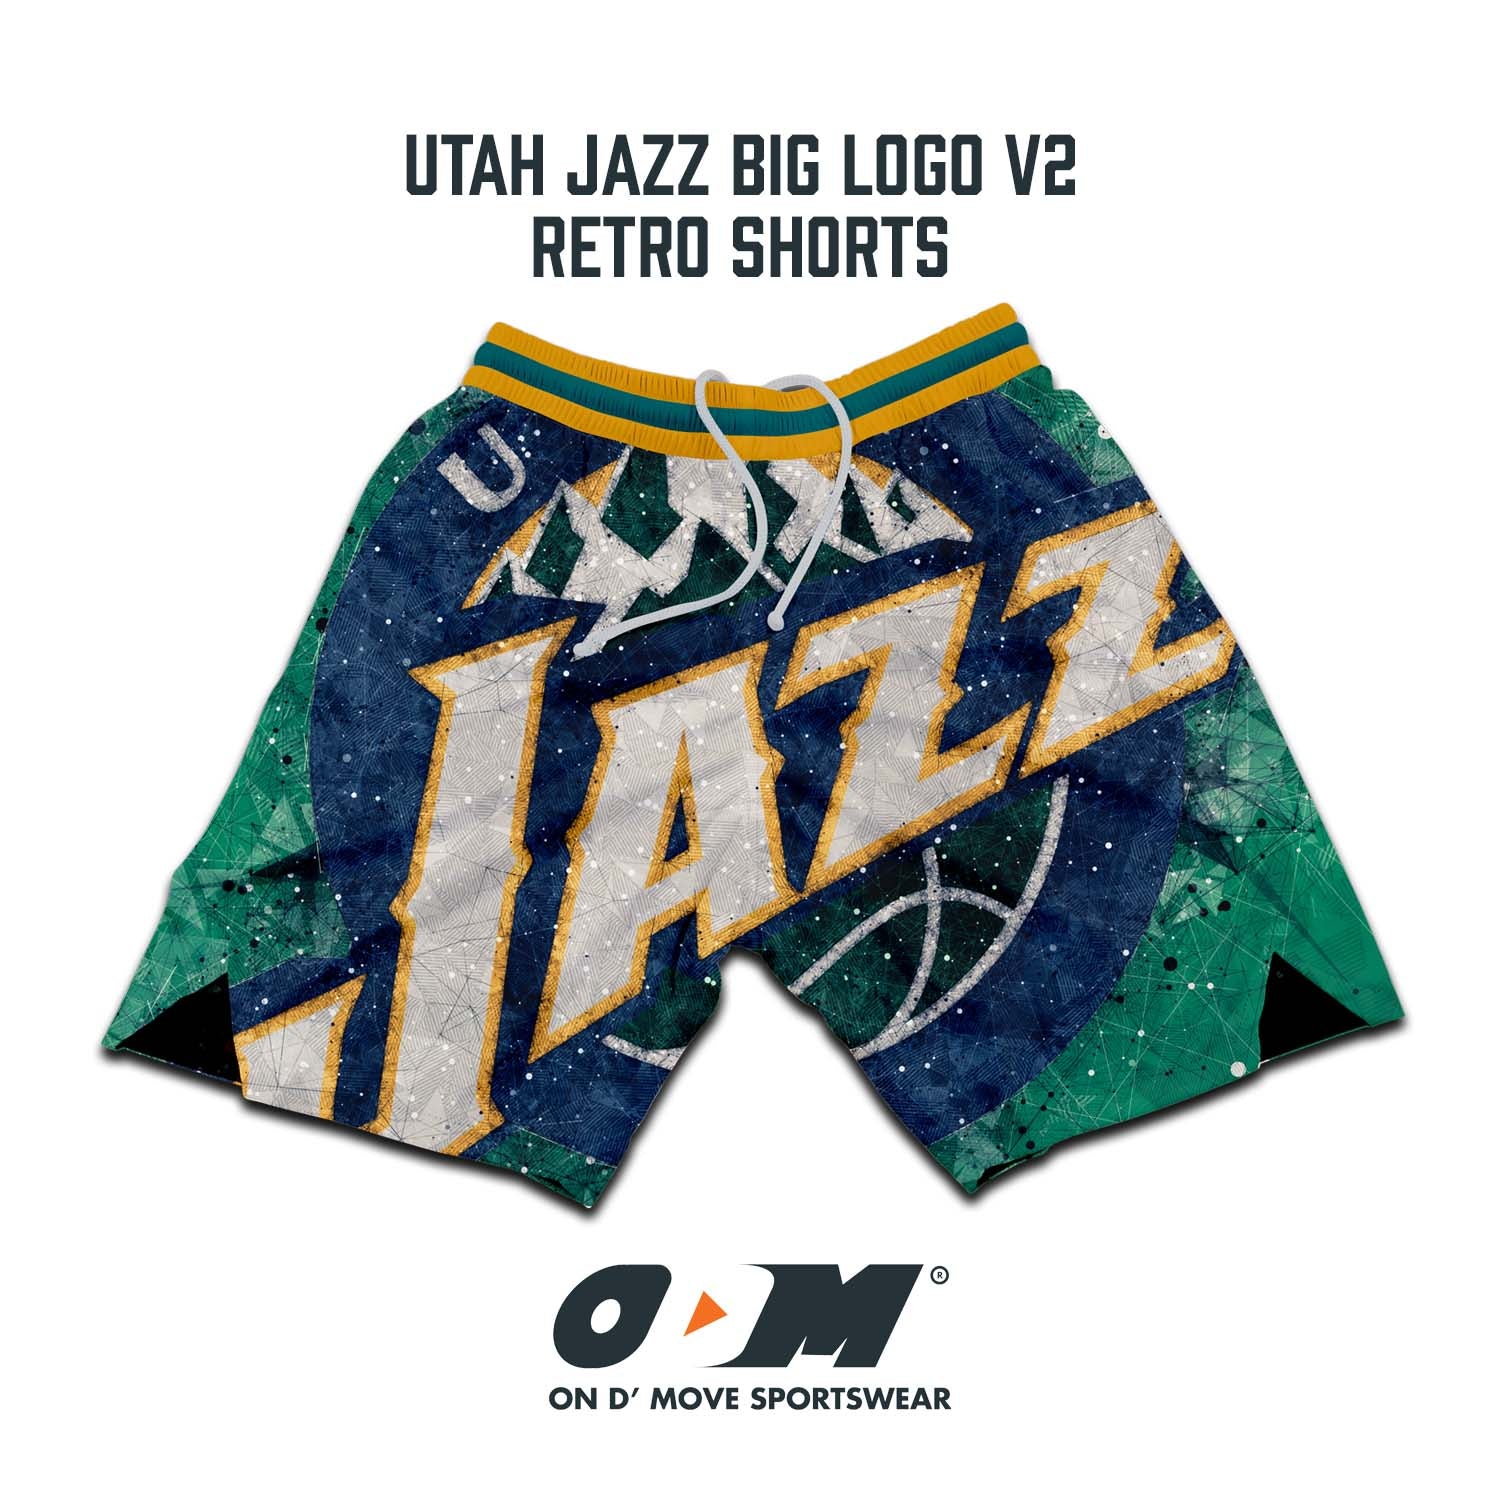 Utah Jazz Big Logo v2 Retro Shorts